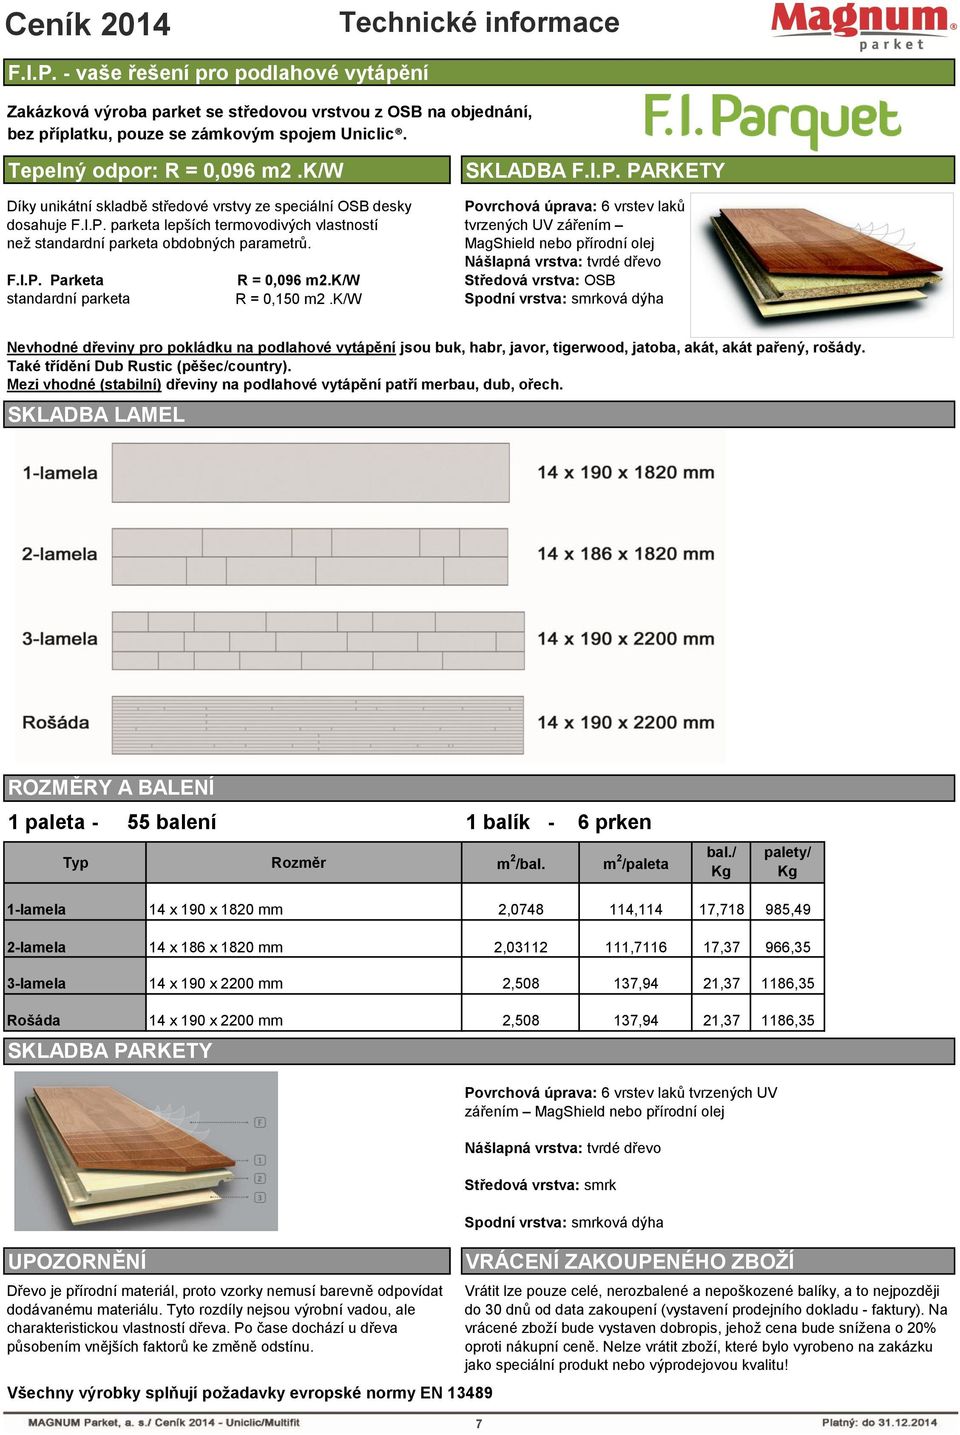 Povrchová úprava: 6 vrstev laků tvrzených UV zářením MagShield nebo přírodní olej Nášlapná vrstva: tvrdé dřevo F.I.P. Parketa R = 0,096 m2.k/w Středová vrstva: OSB standardní parketa R = 0,150 m2.